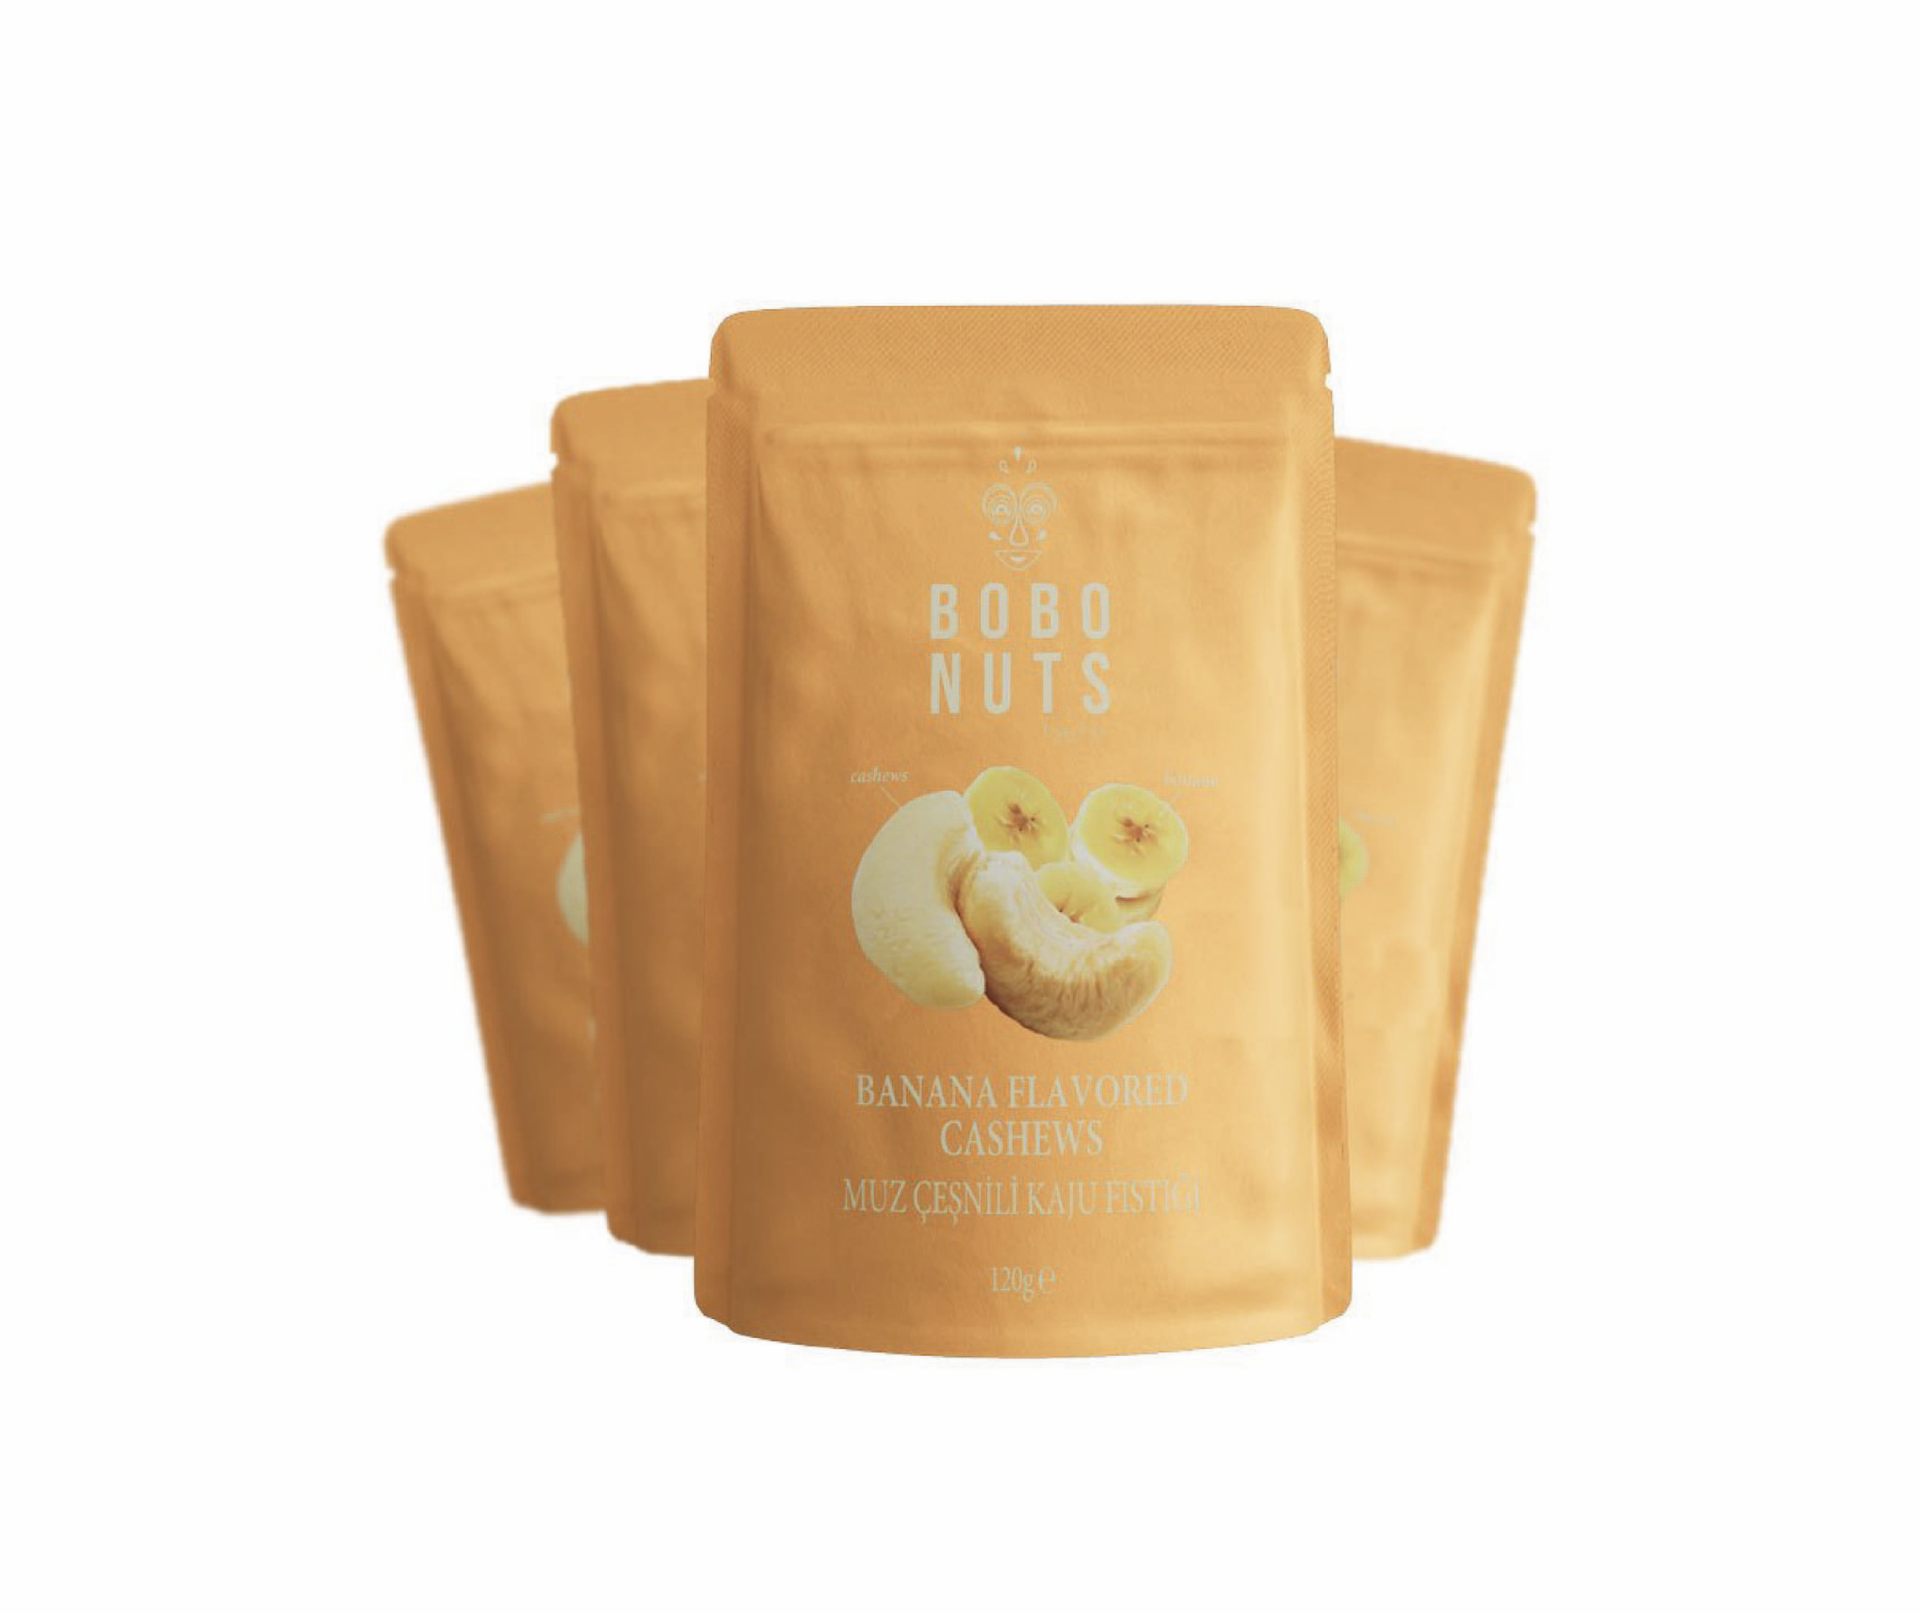 Bobo Nuts Muz Çeşnili Kaju Fıstığı 120g x 4 Paket